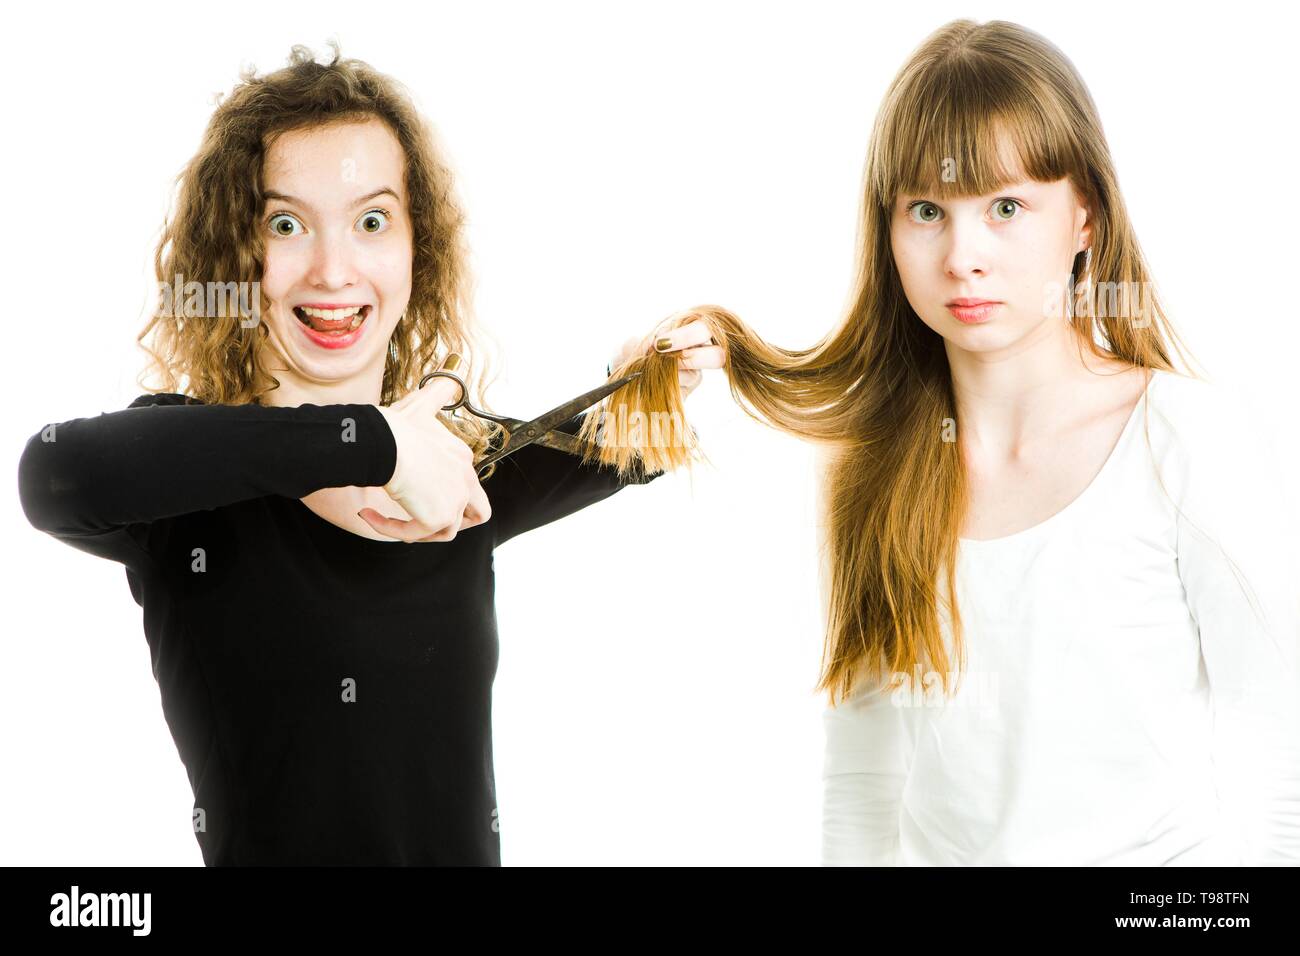 Zwei Mädchen mit blonden Haaren und Schere, man Haare besser Haarschnitt - junge Friseur - weißer Hintergrund zu machen Stockfoto